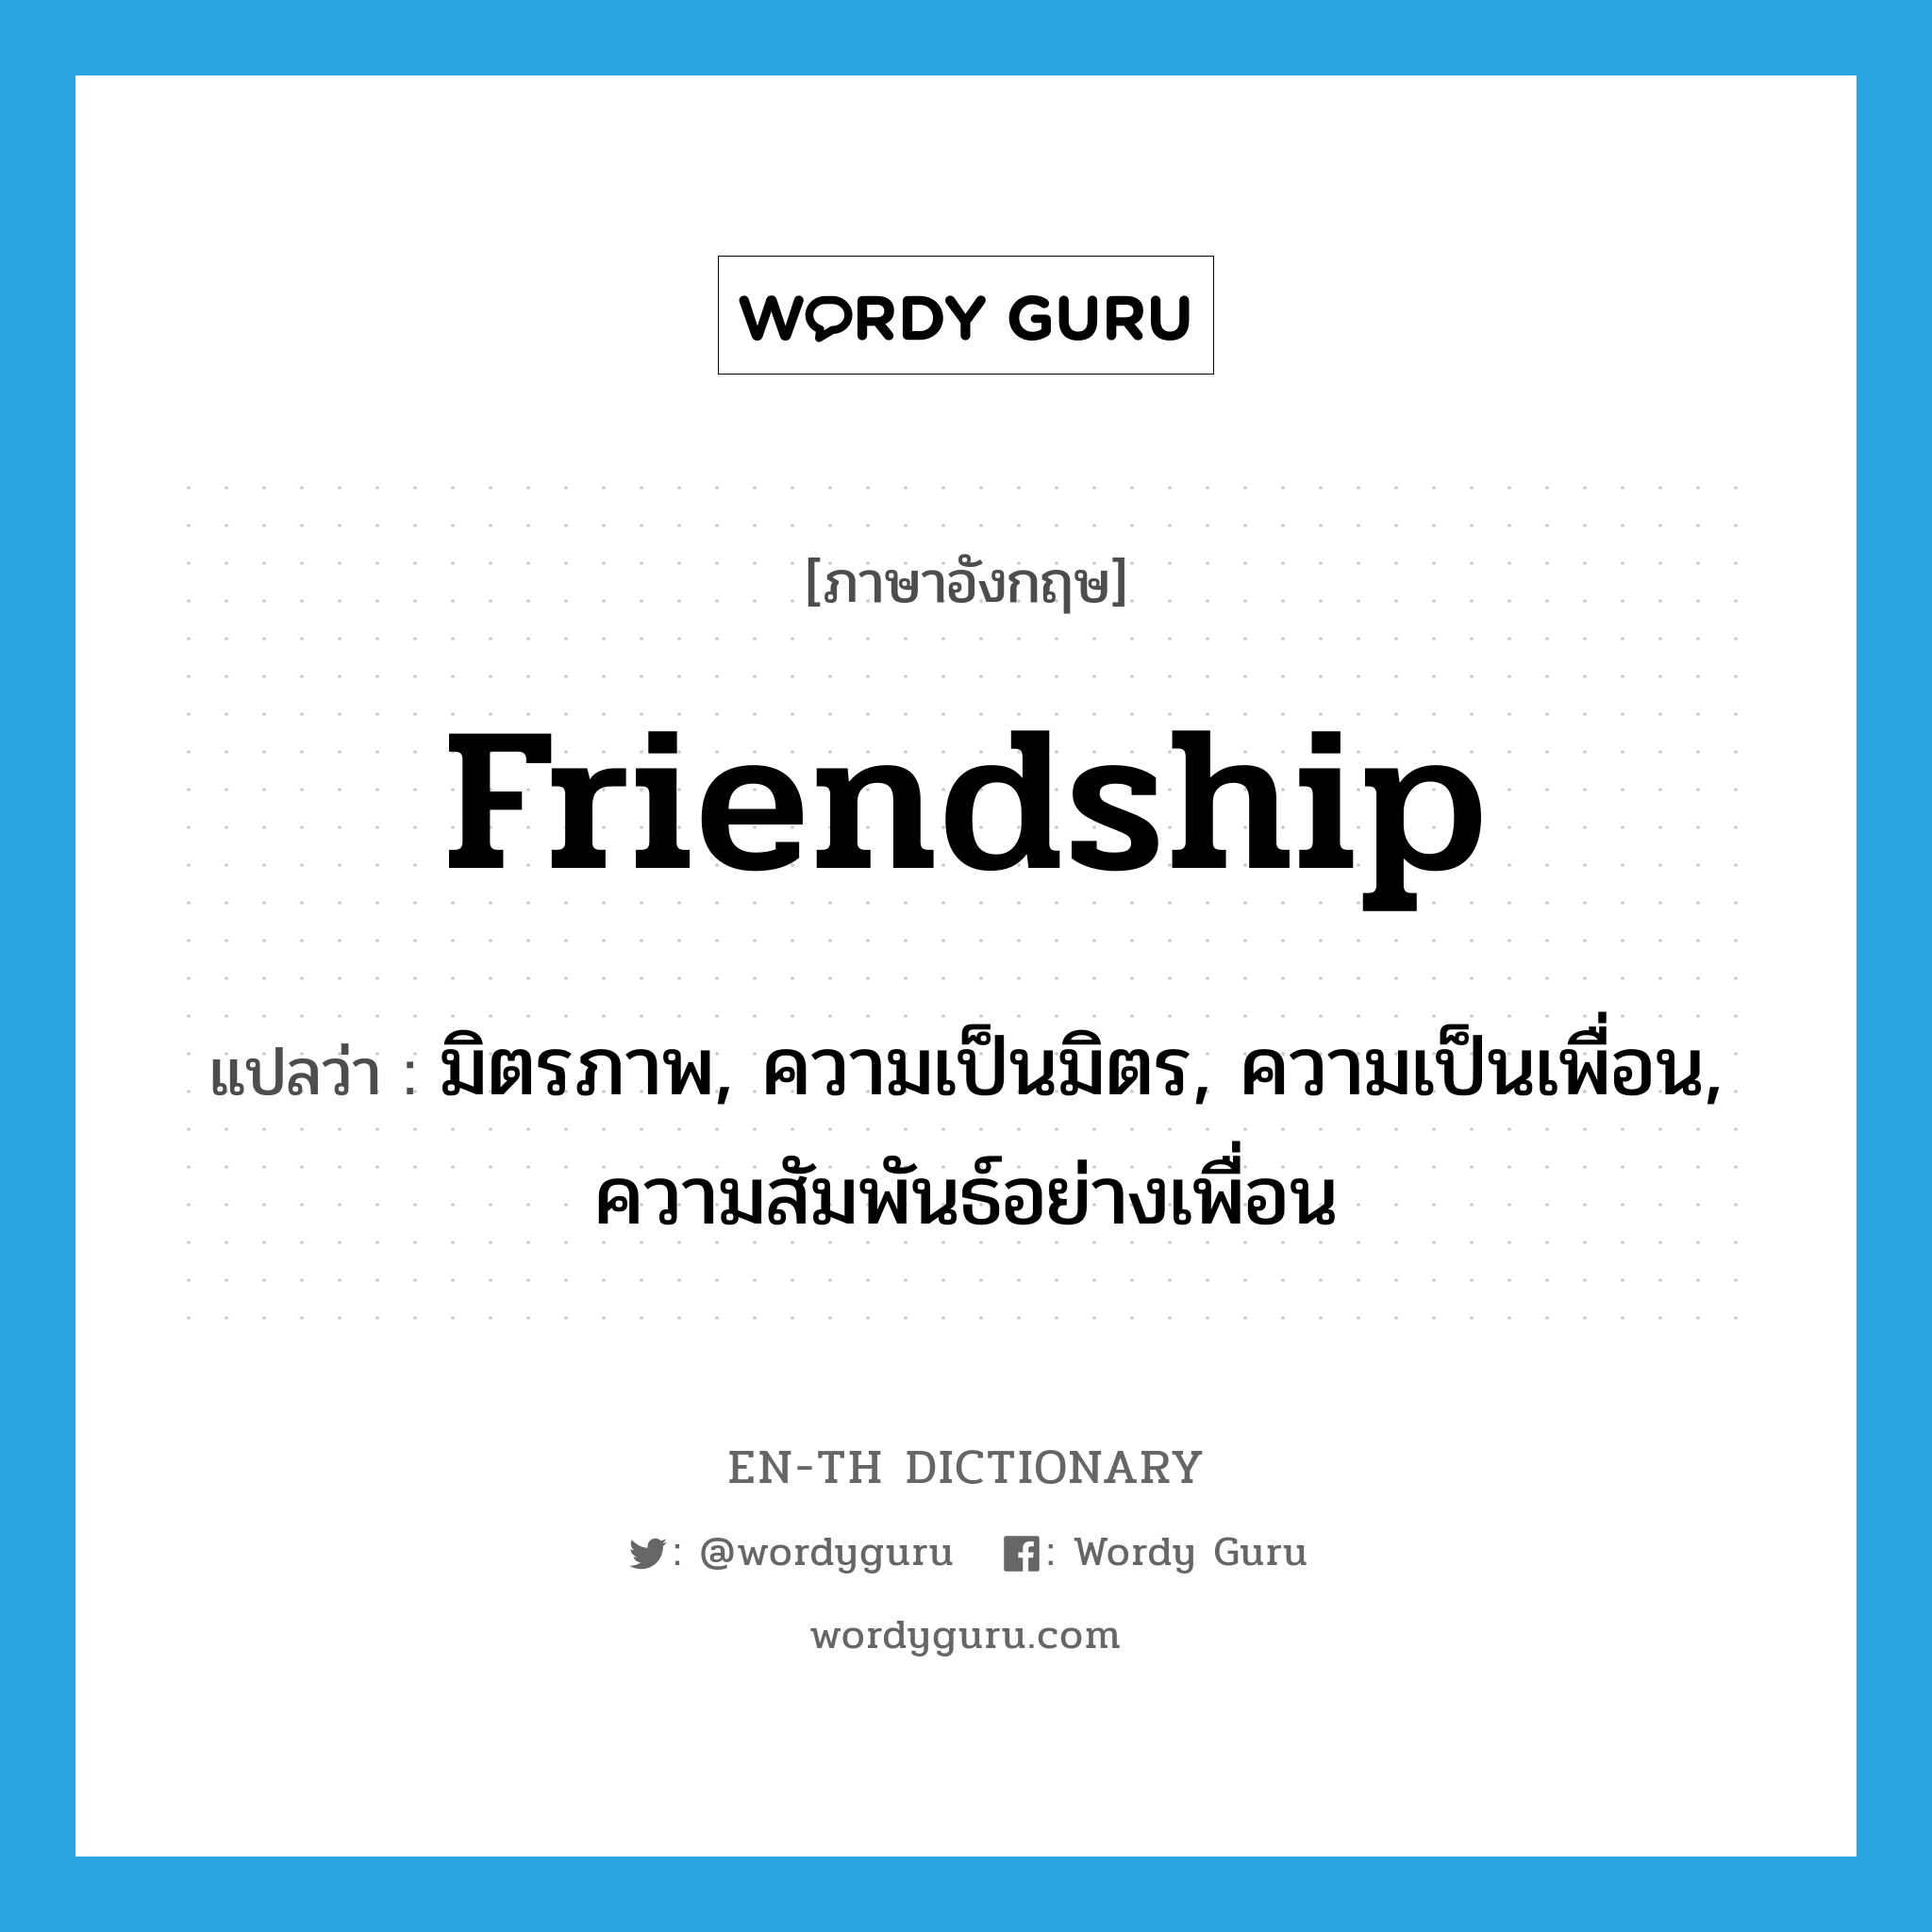 มิตรภาพ, ความเป็นมิตร, ความเป็นเพื่อน, ความสัมพันธ์อย่างเพื่อน ภาษาอังกฤษ?, คำศัพท์ภาษาอังกฤษ มิตรภาพ, ความเป็นมิตร, ความเป็นเพื่อน, ความสัมพันธ์อย่างเพื่อน แปลว่า friendship ประเภท N หมวด N